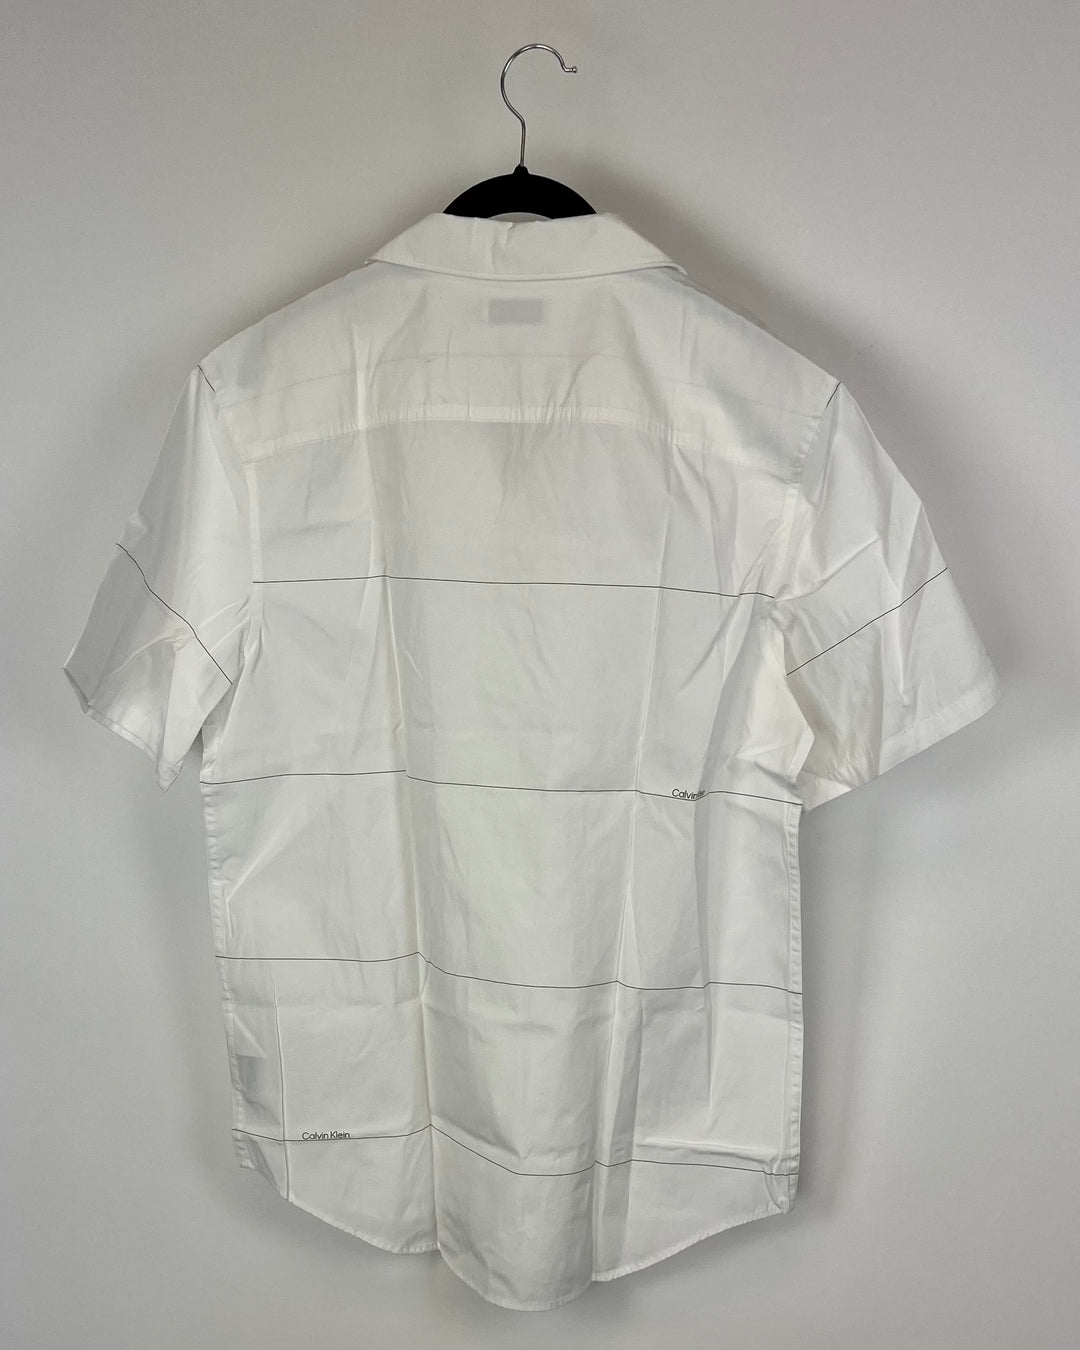 MENS Short Sleeve White Sport Shirt - Medium